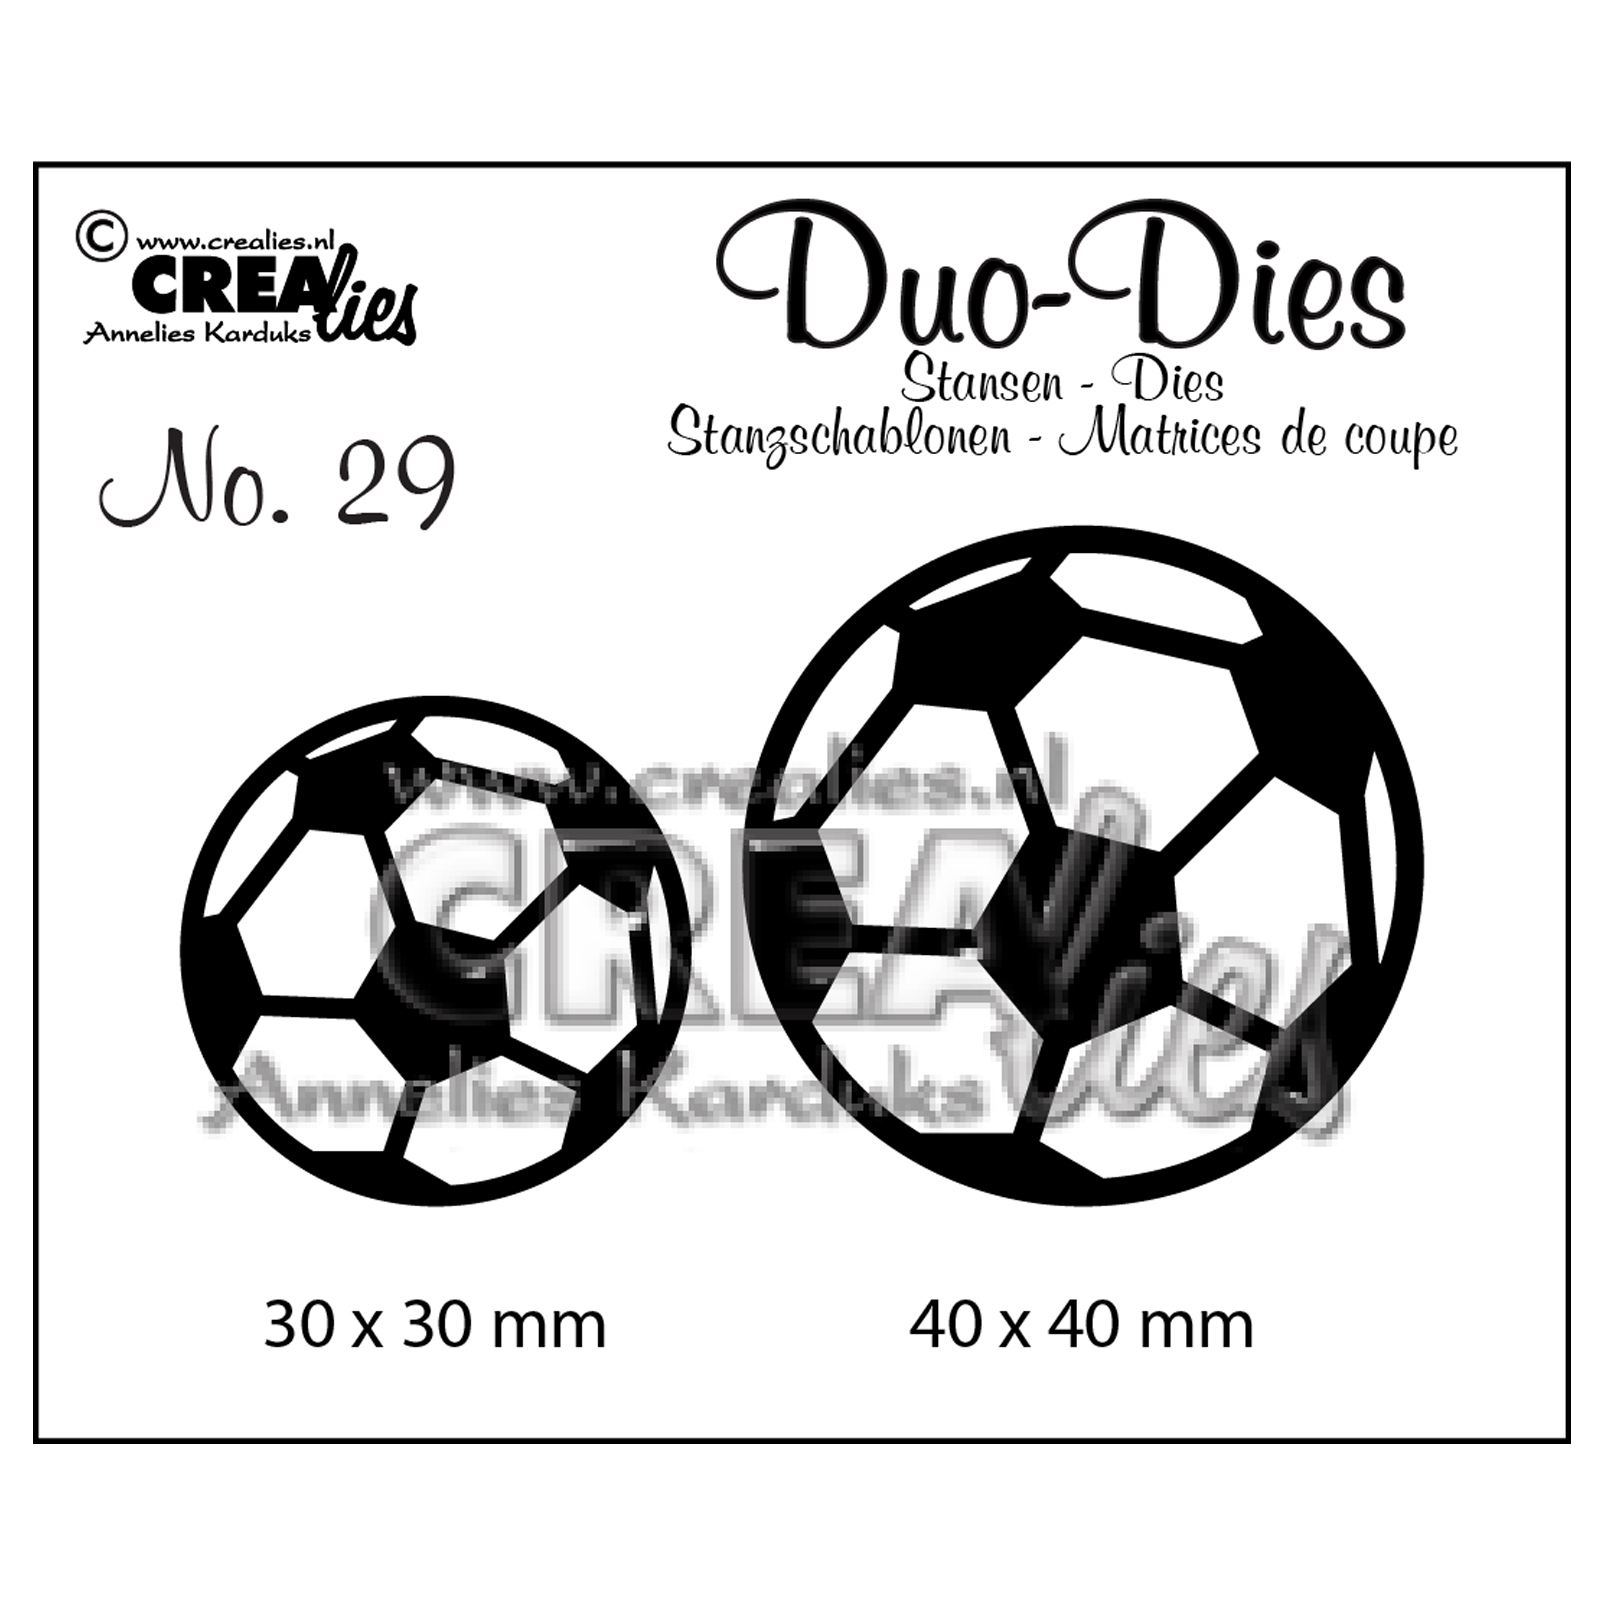 Crealies • Duo Dies no.29 Voetballen